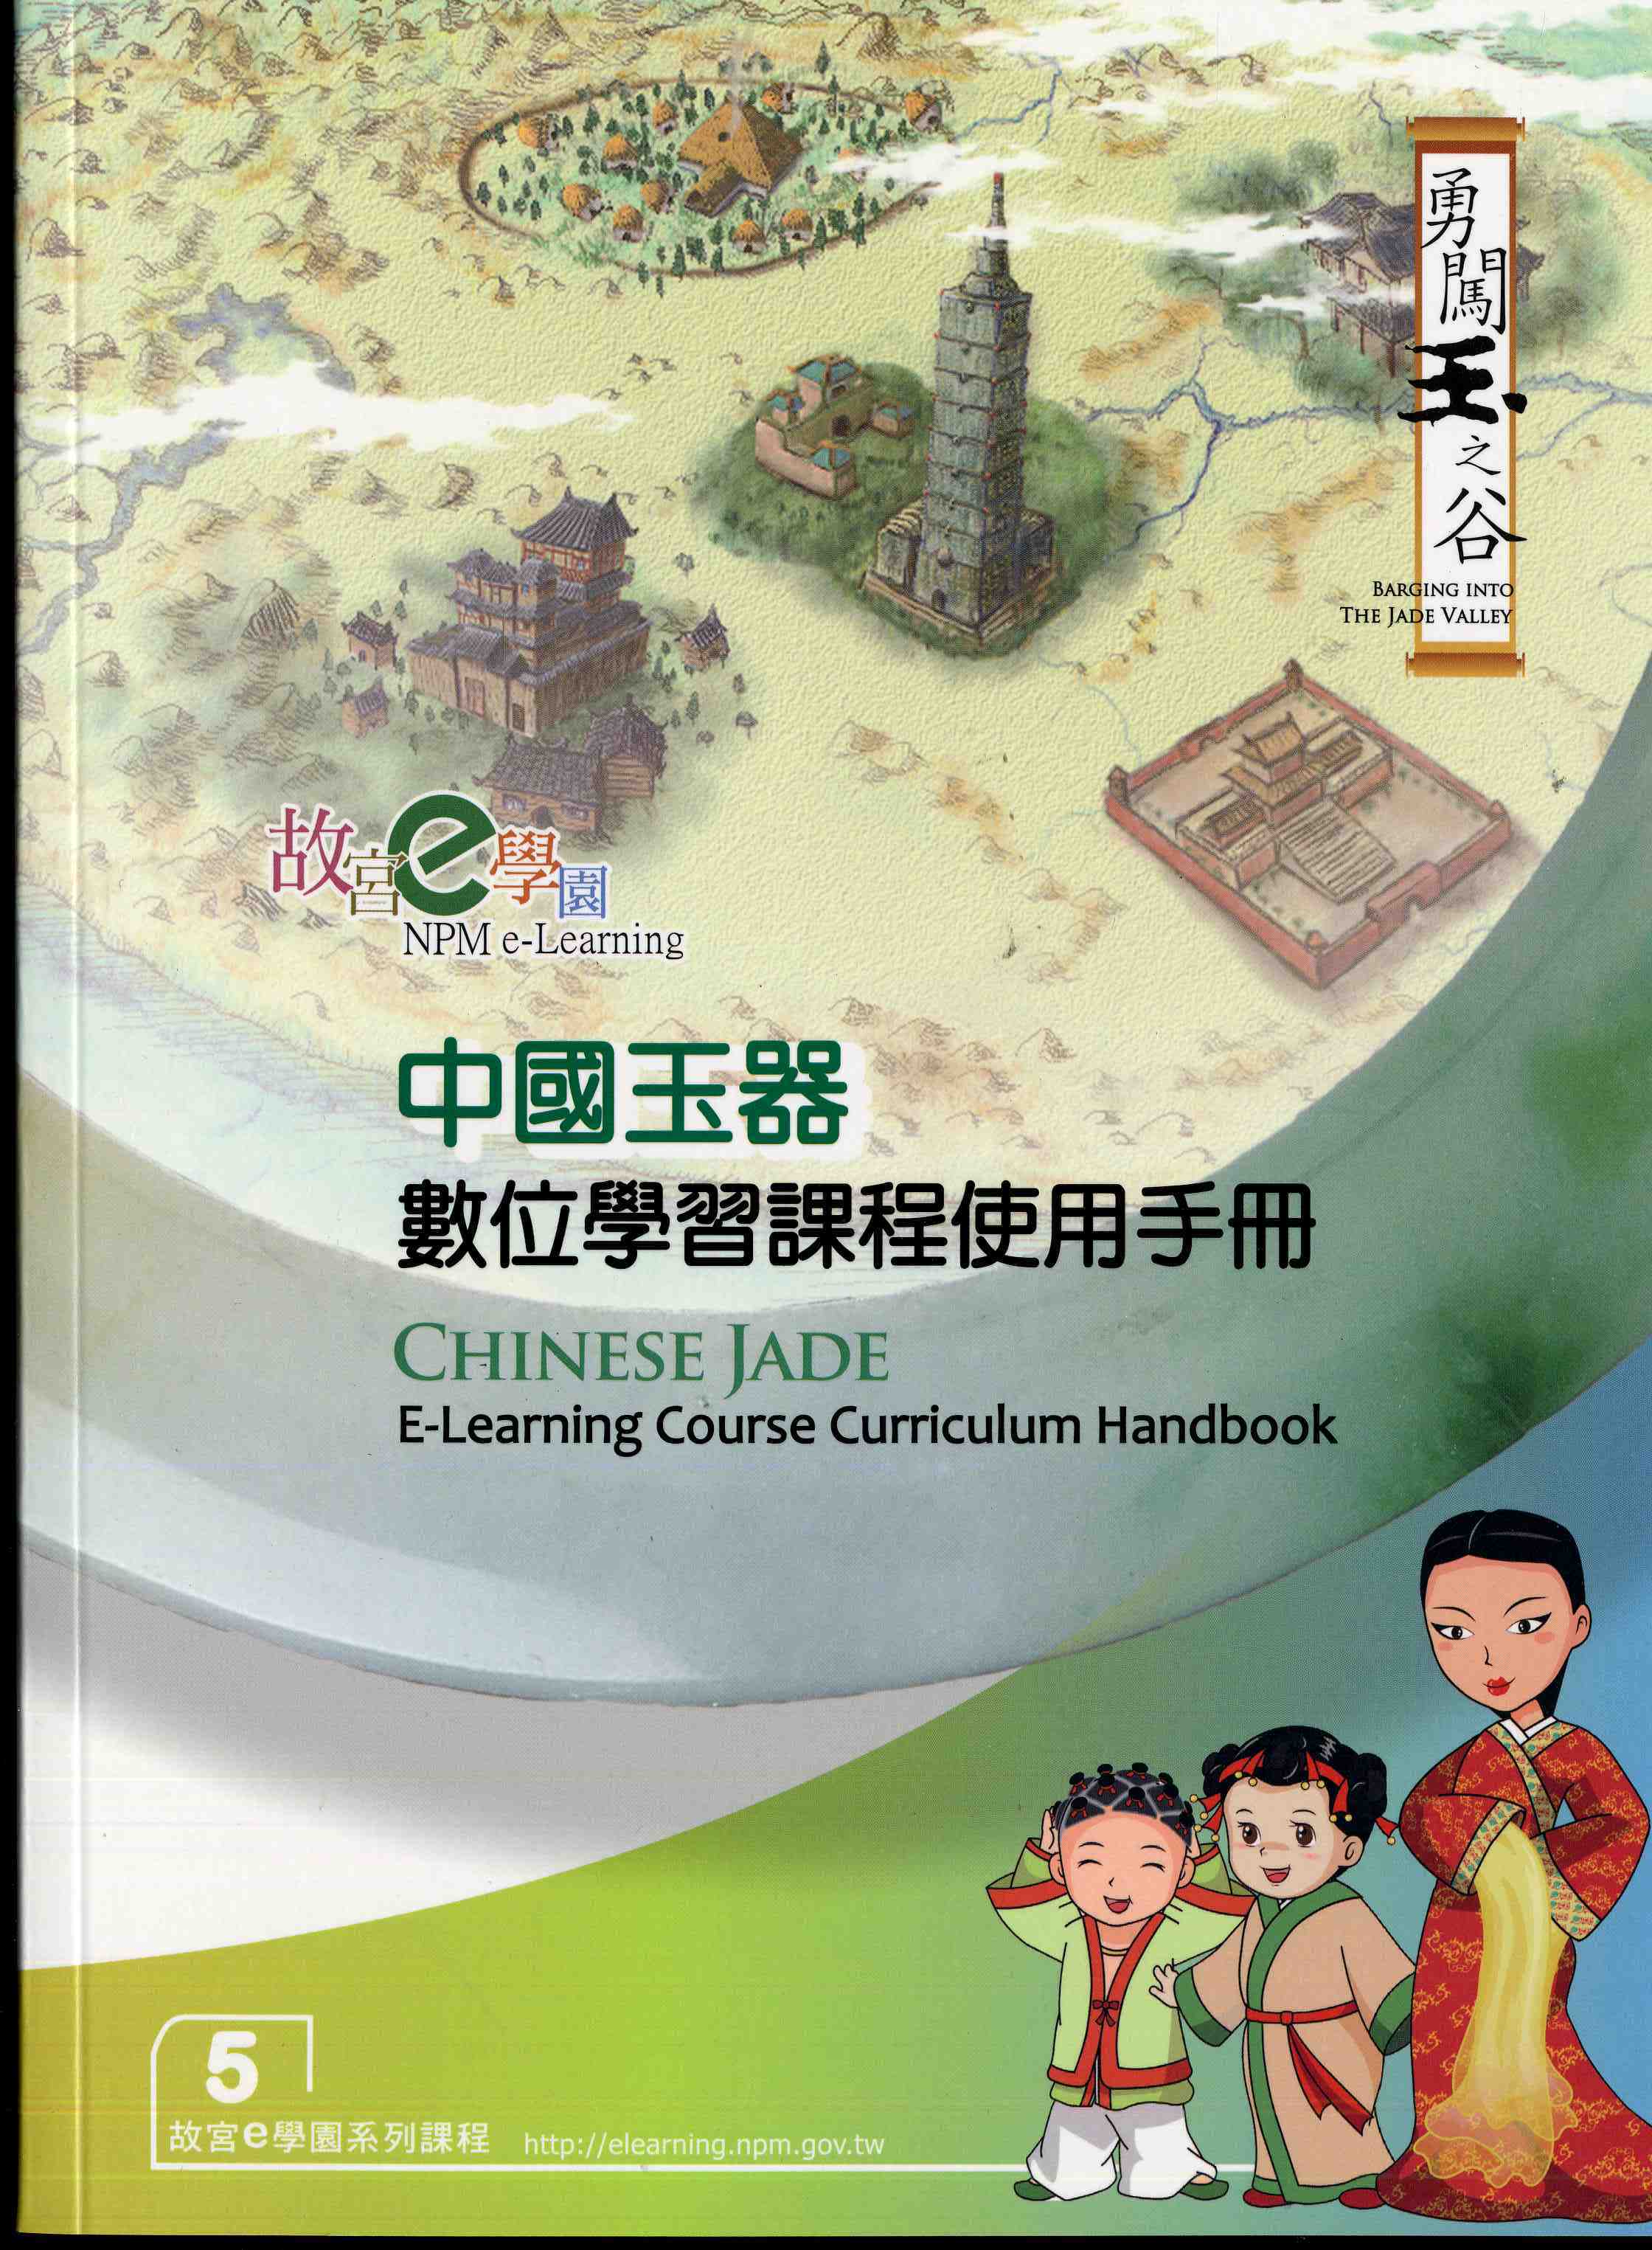 中國玉器數位學習課程使用手冊